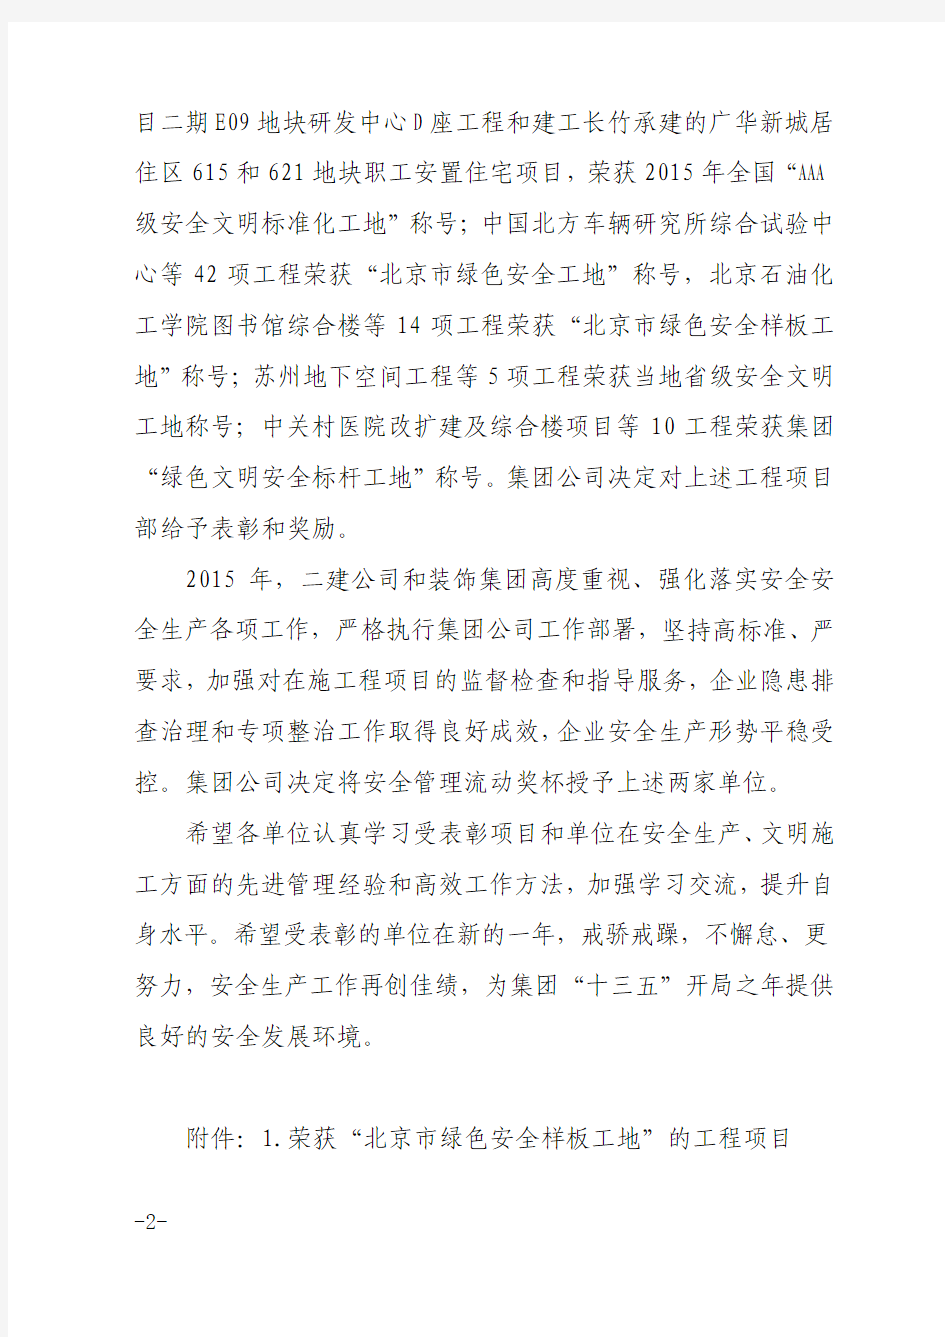 【建安﹝2016﹞40号】《关于表彰2015年北京市绿色安全样板工地、集团公司绿色文明安全标杆工地的决定》